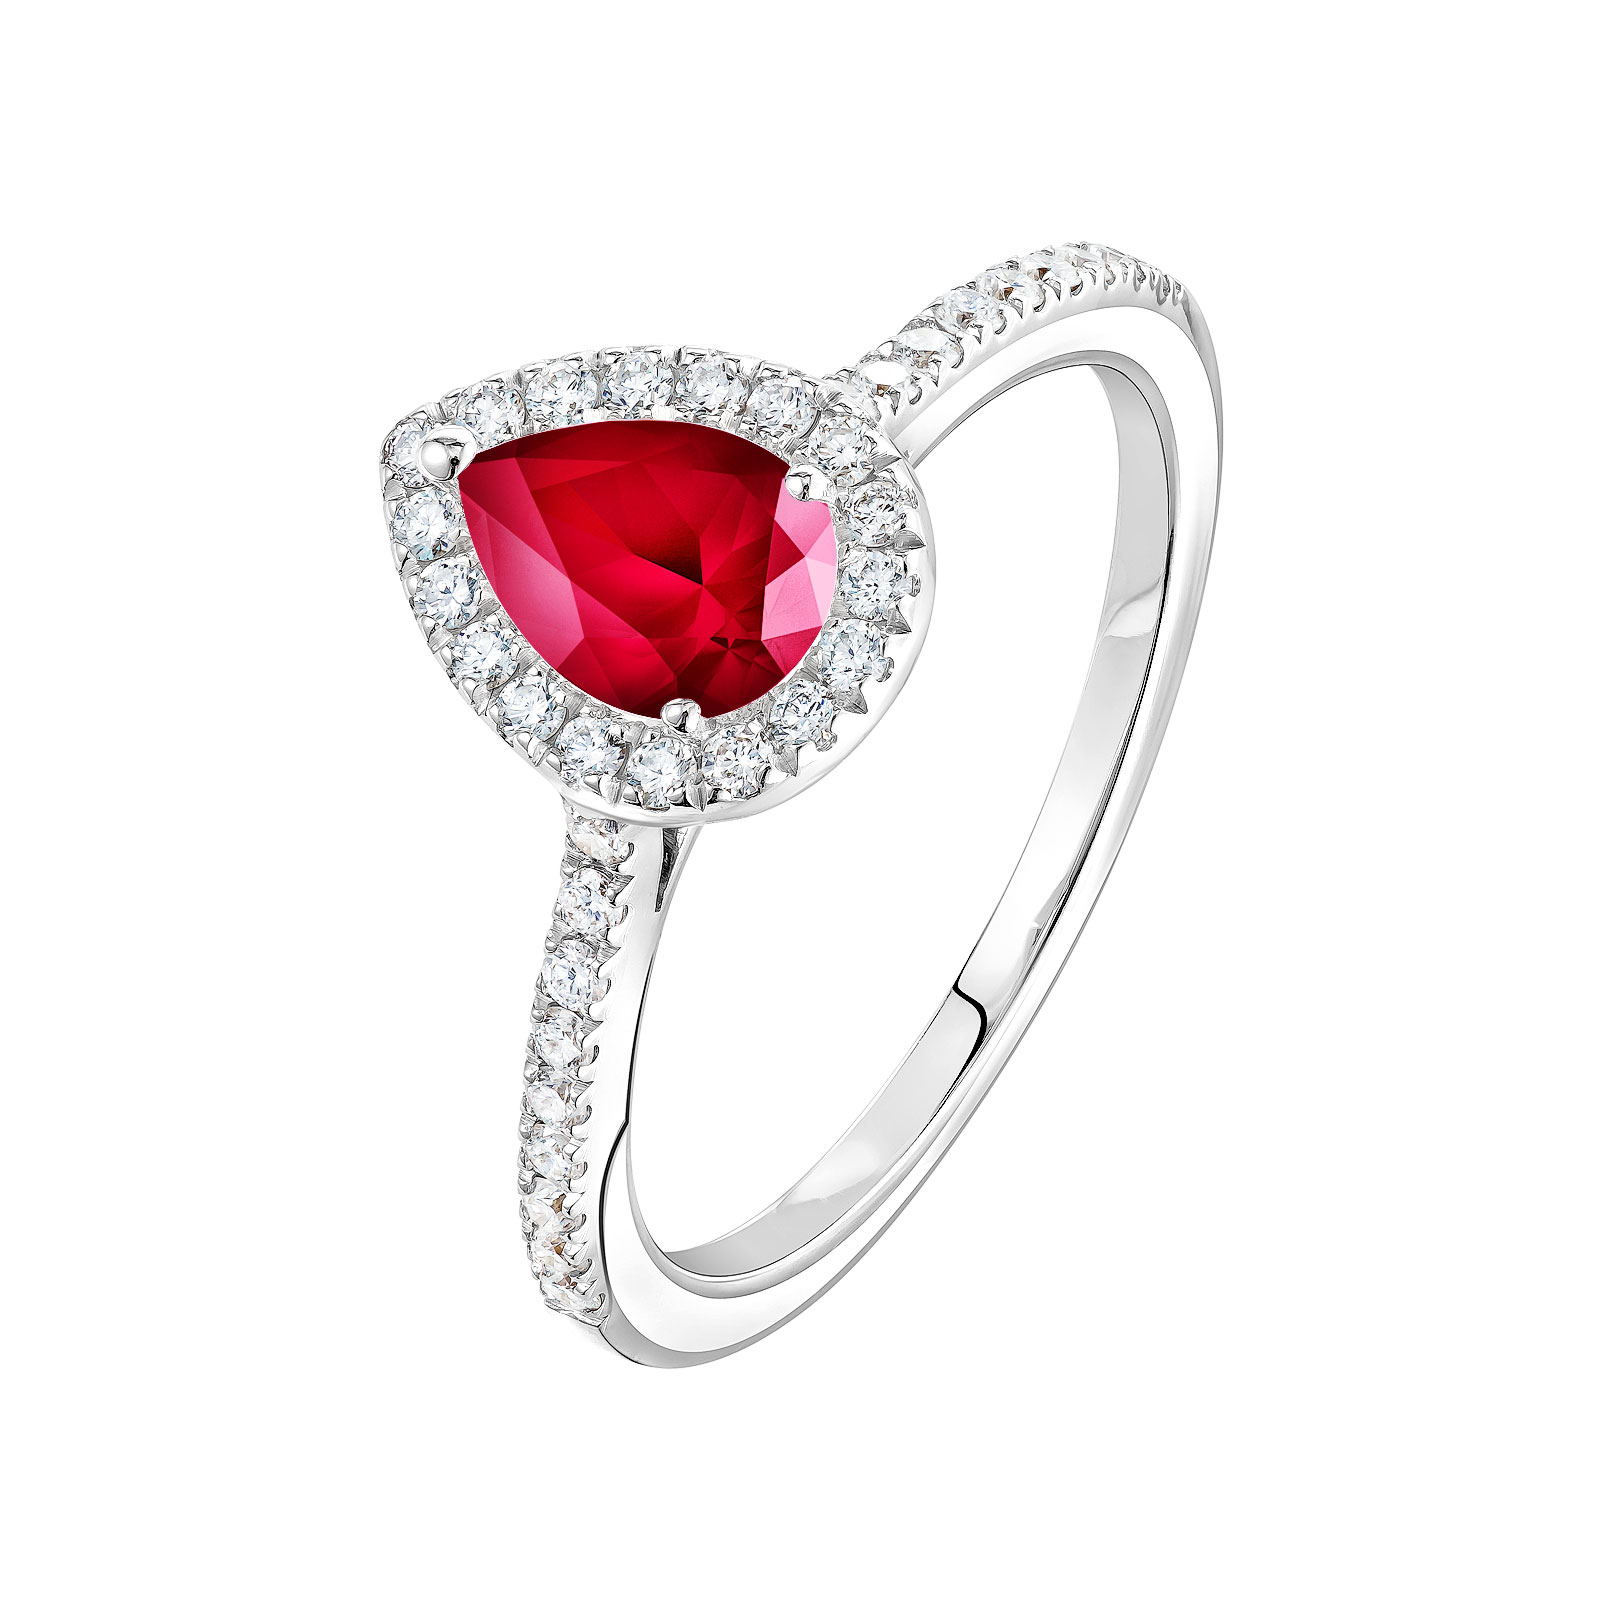 Ring White gold Ruby and diamonds Rétromantique Poire Pavée 1